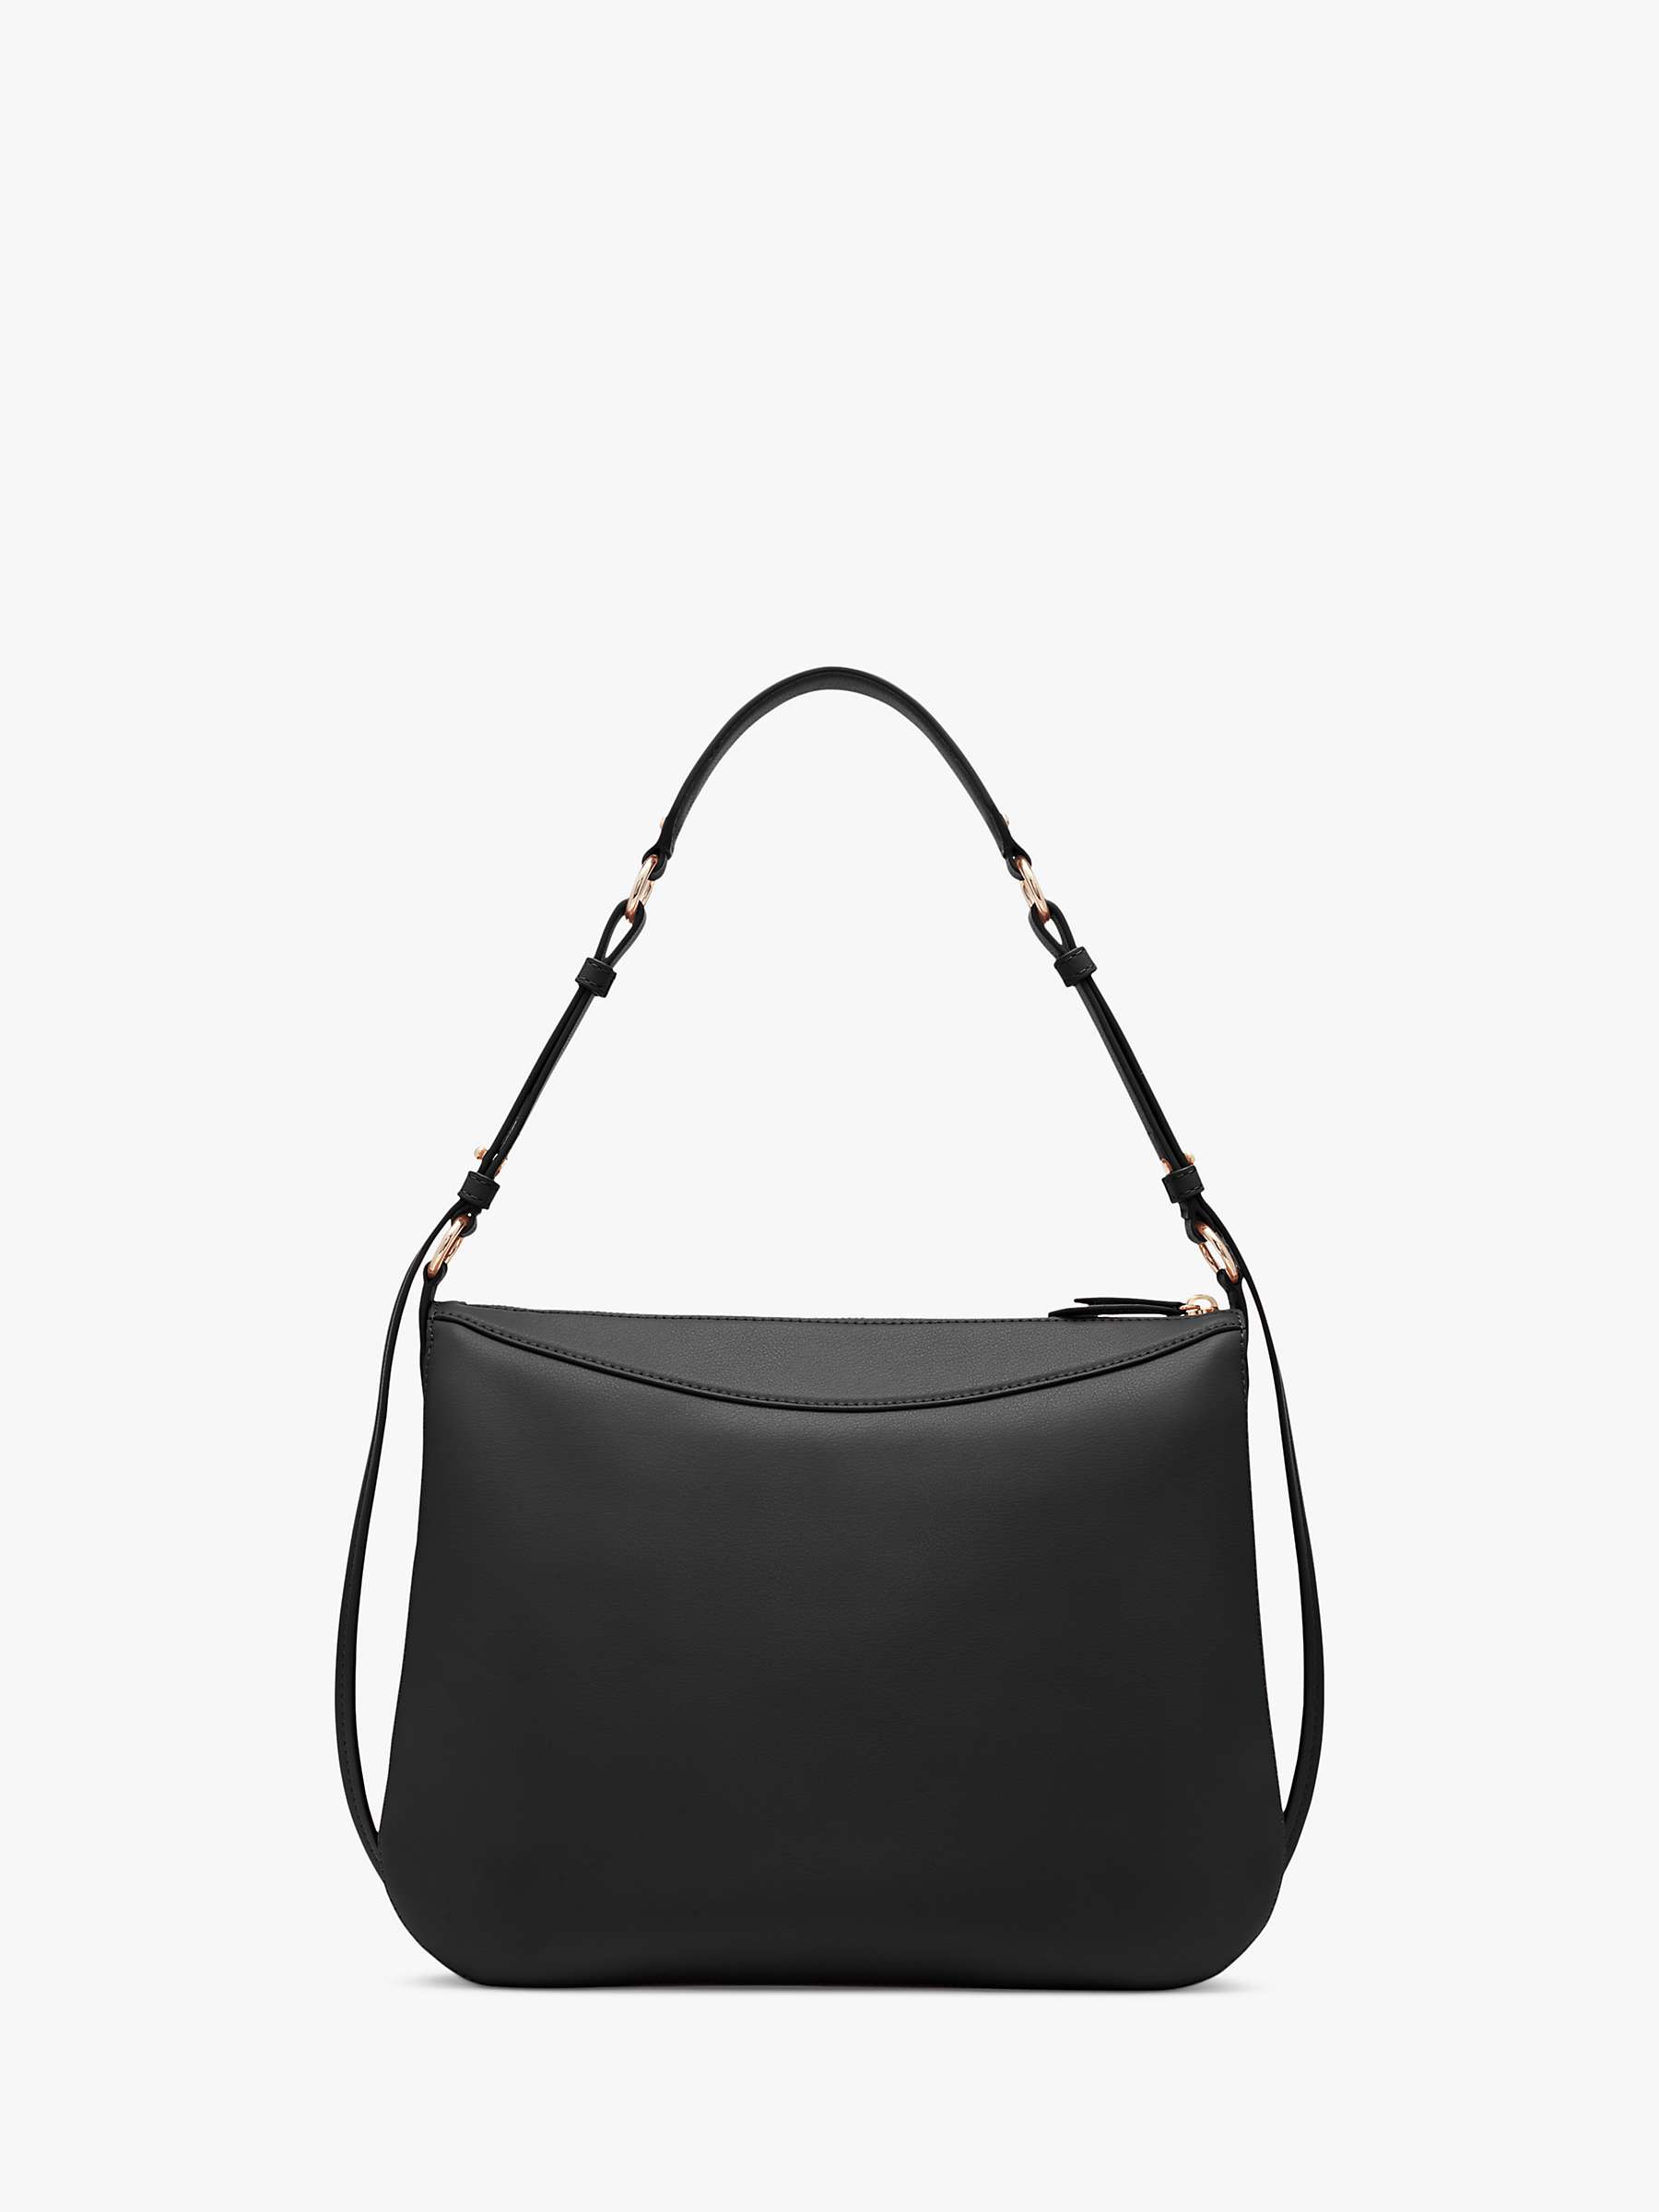 DKNY Hobo Leather Shoulder Bag, Black at John Lewis & Partners